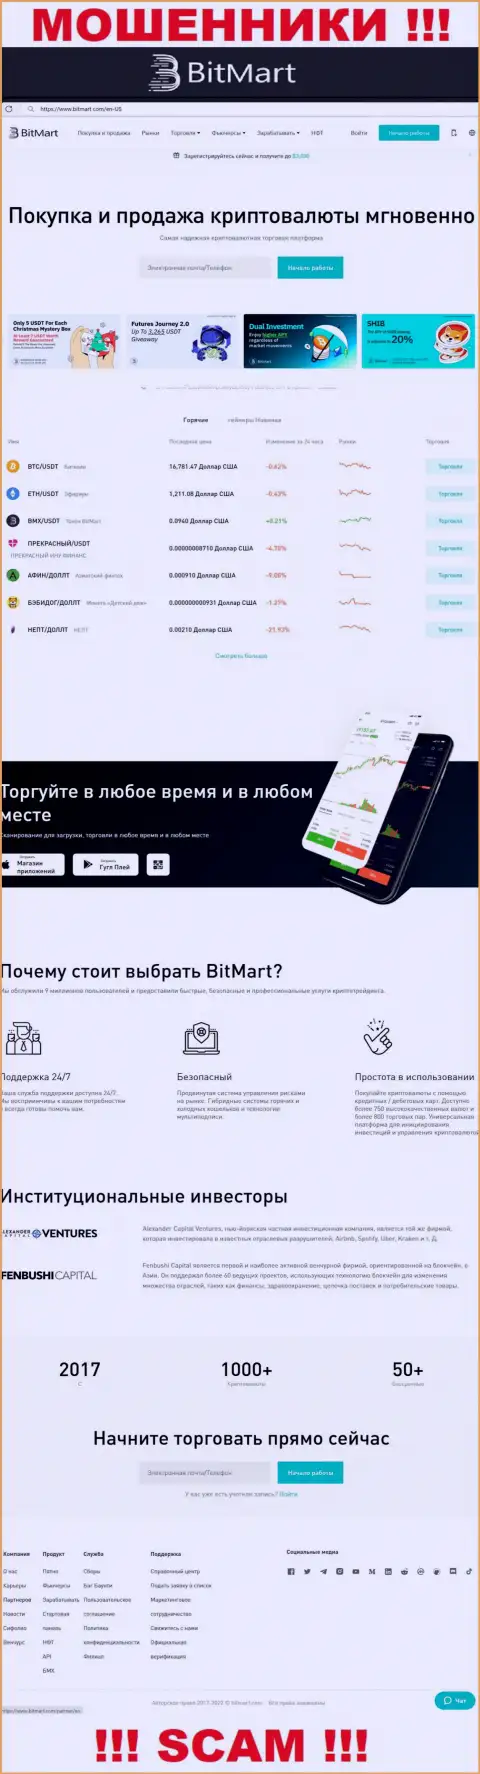 Вид официального онлайн-сервиса противоправно действующей конторы BitMart Com